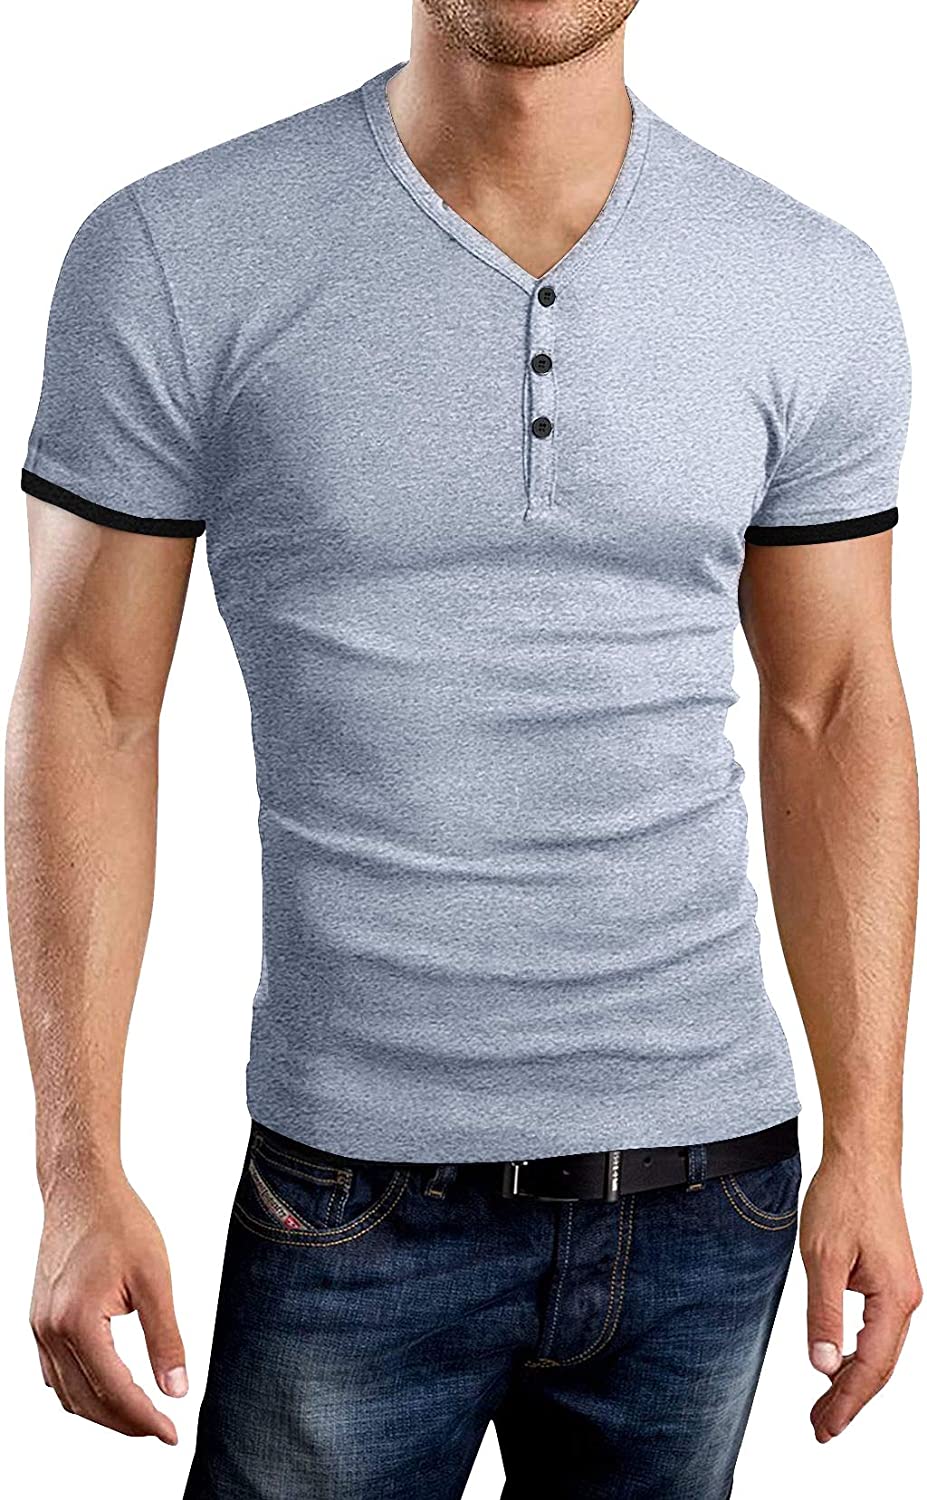 KUYIGO Mens Short Sleeve Henleys T-Shirts Buttons Placket Plain Summer ...